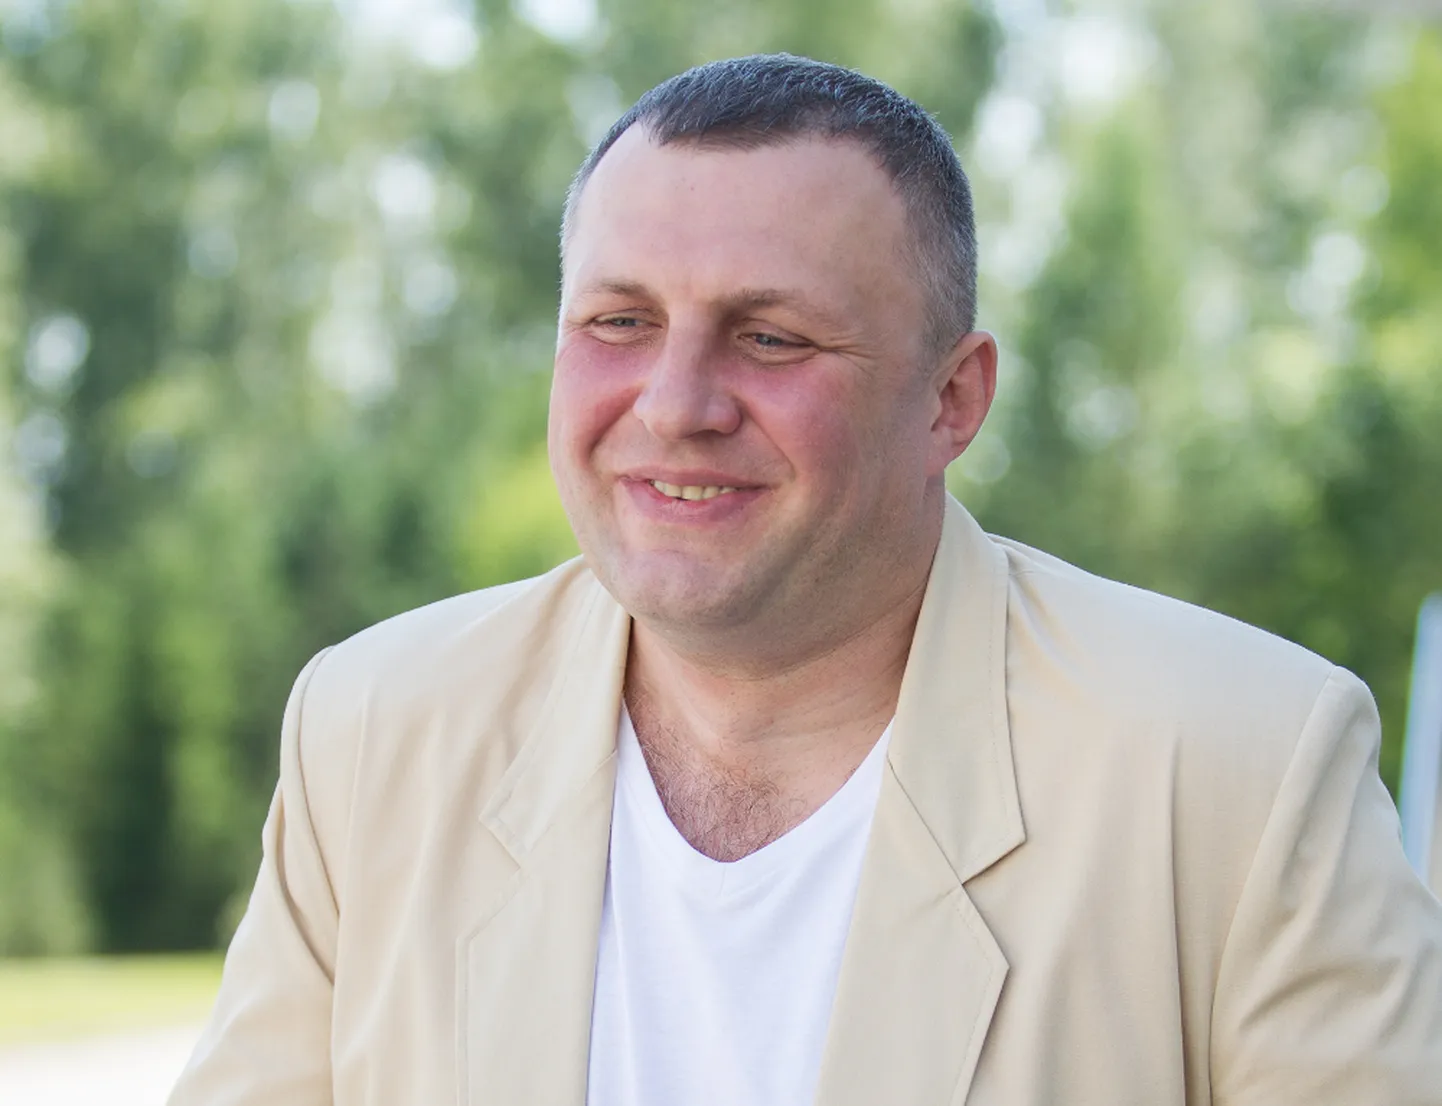 Juri Gribovskil õnnestus kohtus tõestada, et ta ei tarbinud eelmise aasta kaevurite päeval eluohtlikus koguses narkootikume enda tahtel.

MATTI KÄMÄRÄ